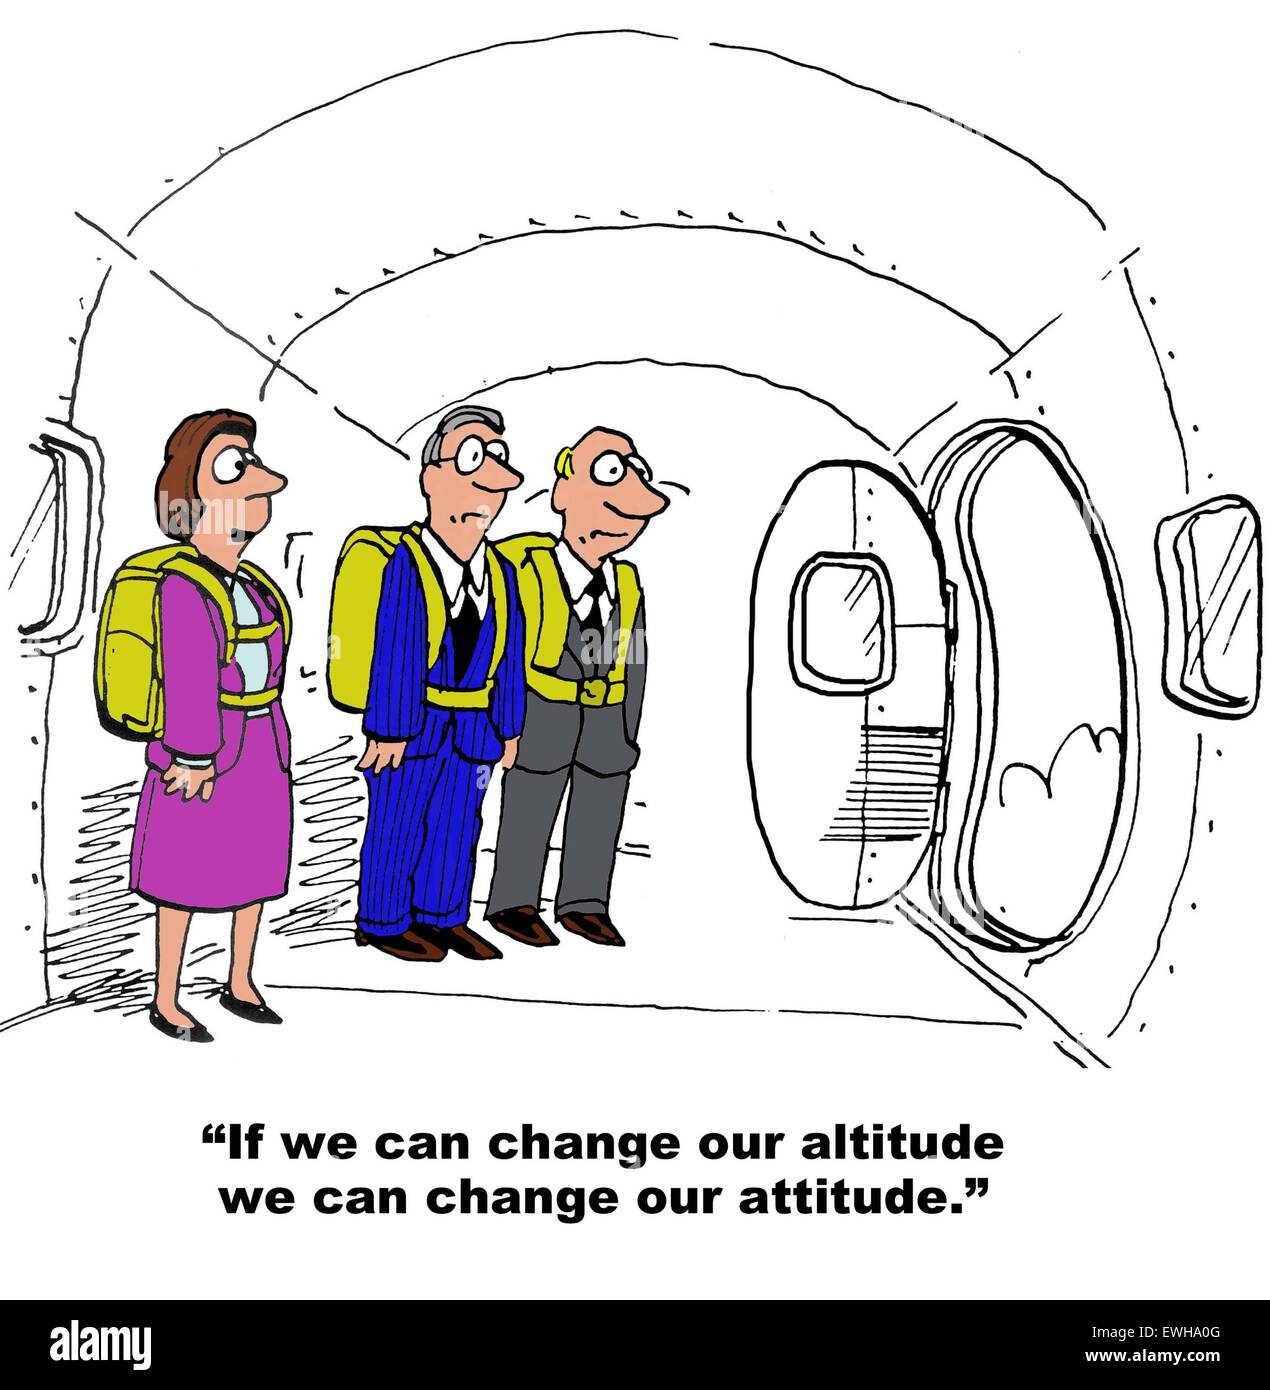 Business-Cartoon von Menschen tragen Fallschirme, Geschäftsfrau sagt: "Wenn wir unsere Höhenlage ändern können wir unsere Haltung ändern kann". Stockfoto